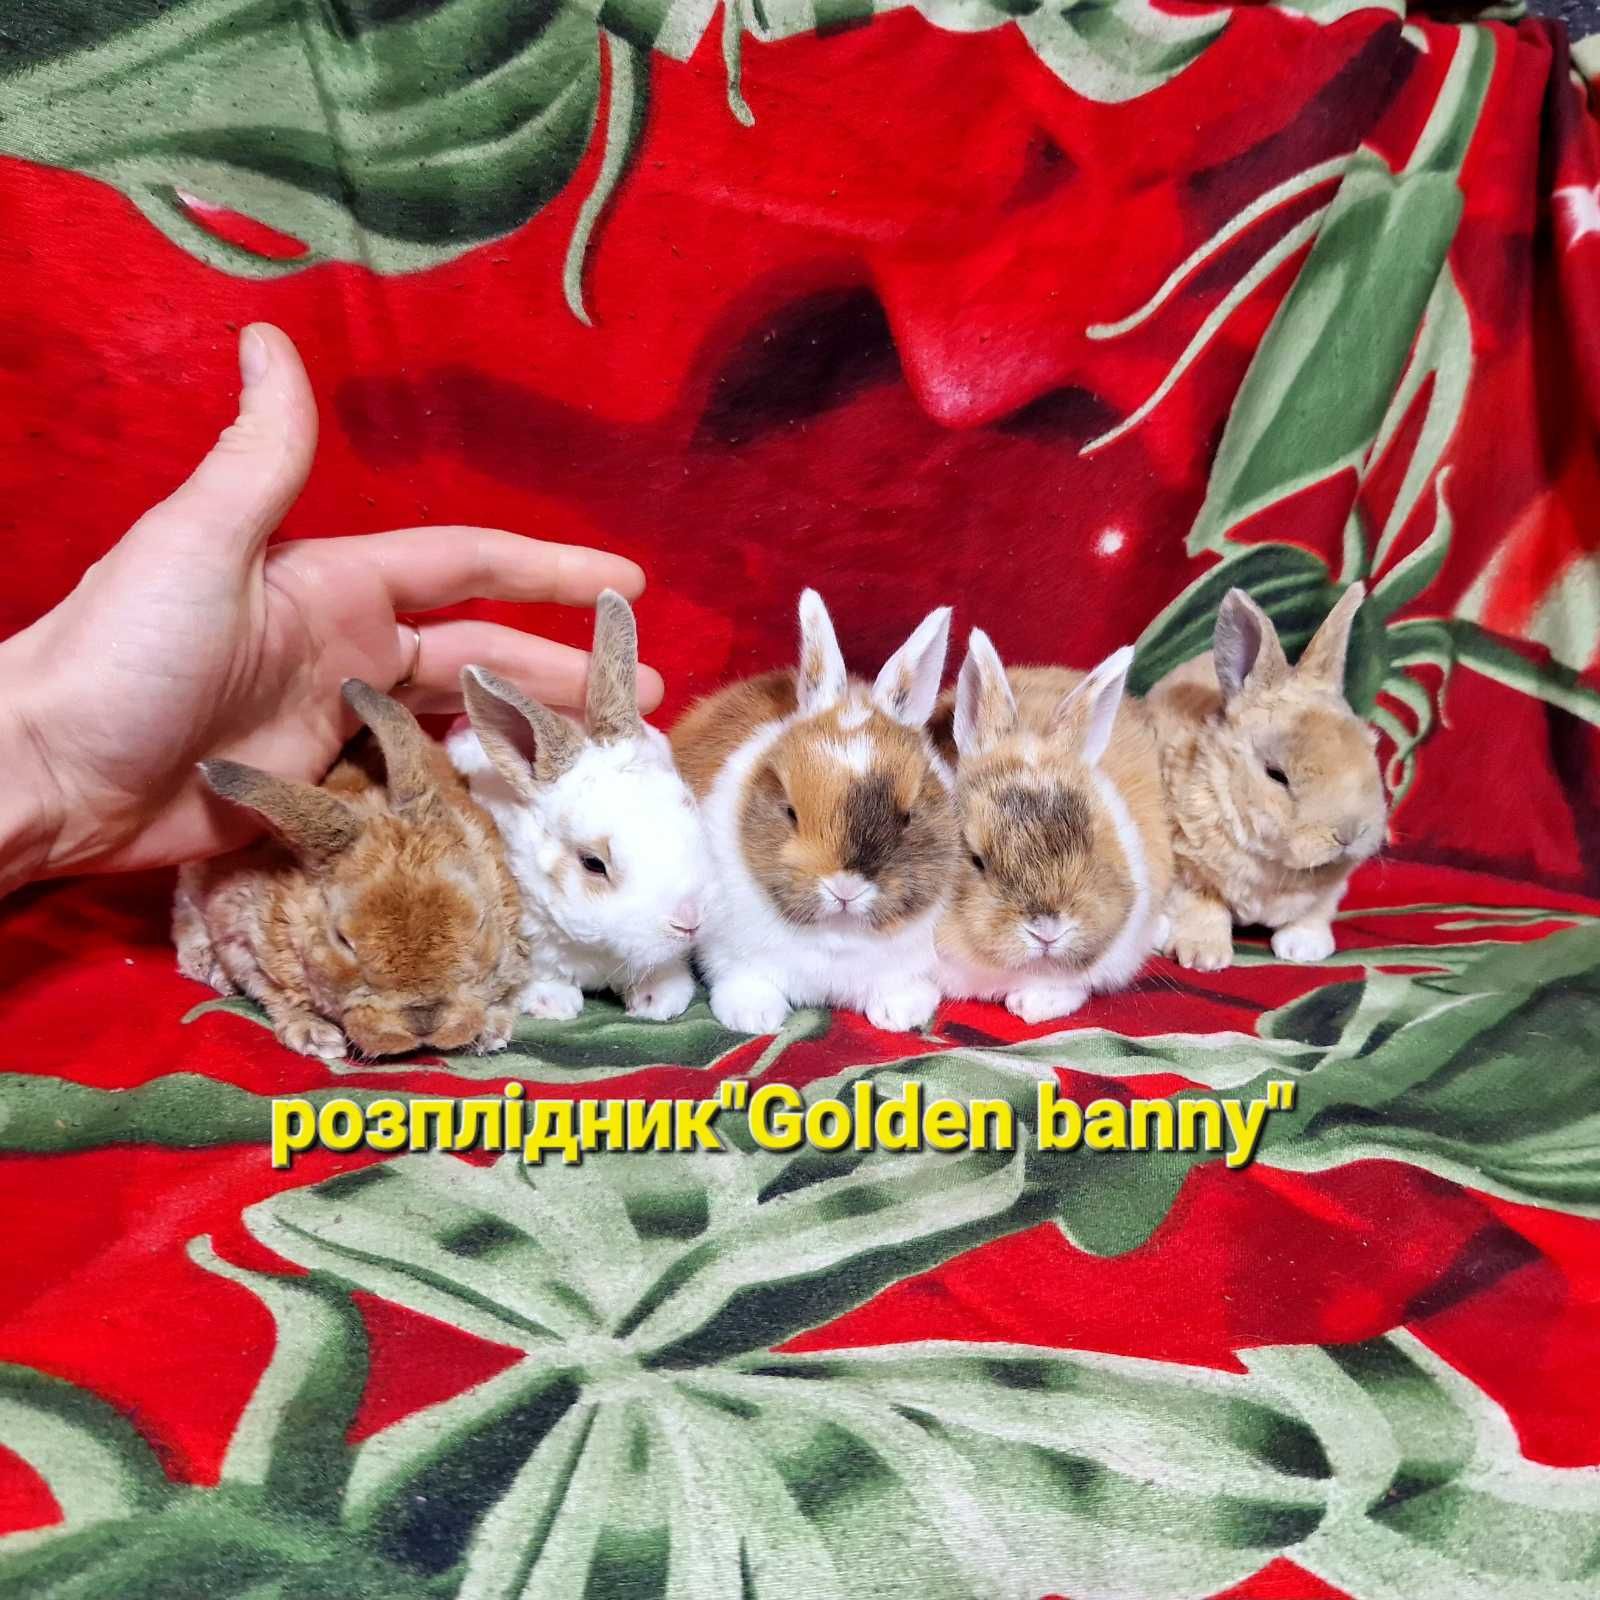 Нидерландские кролики,карликові малюки,доступний виводок,рексики